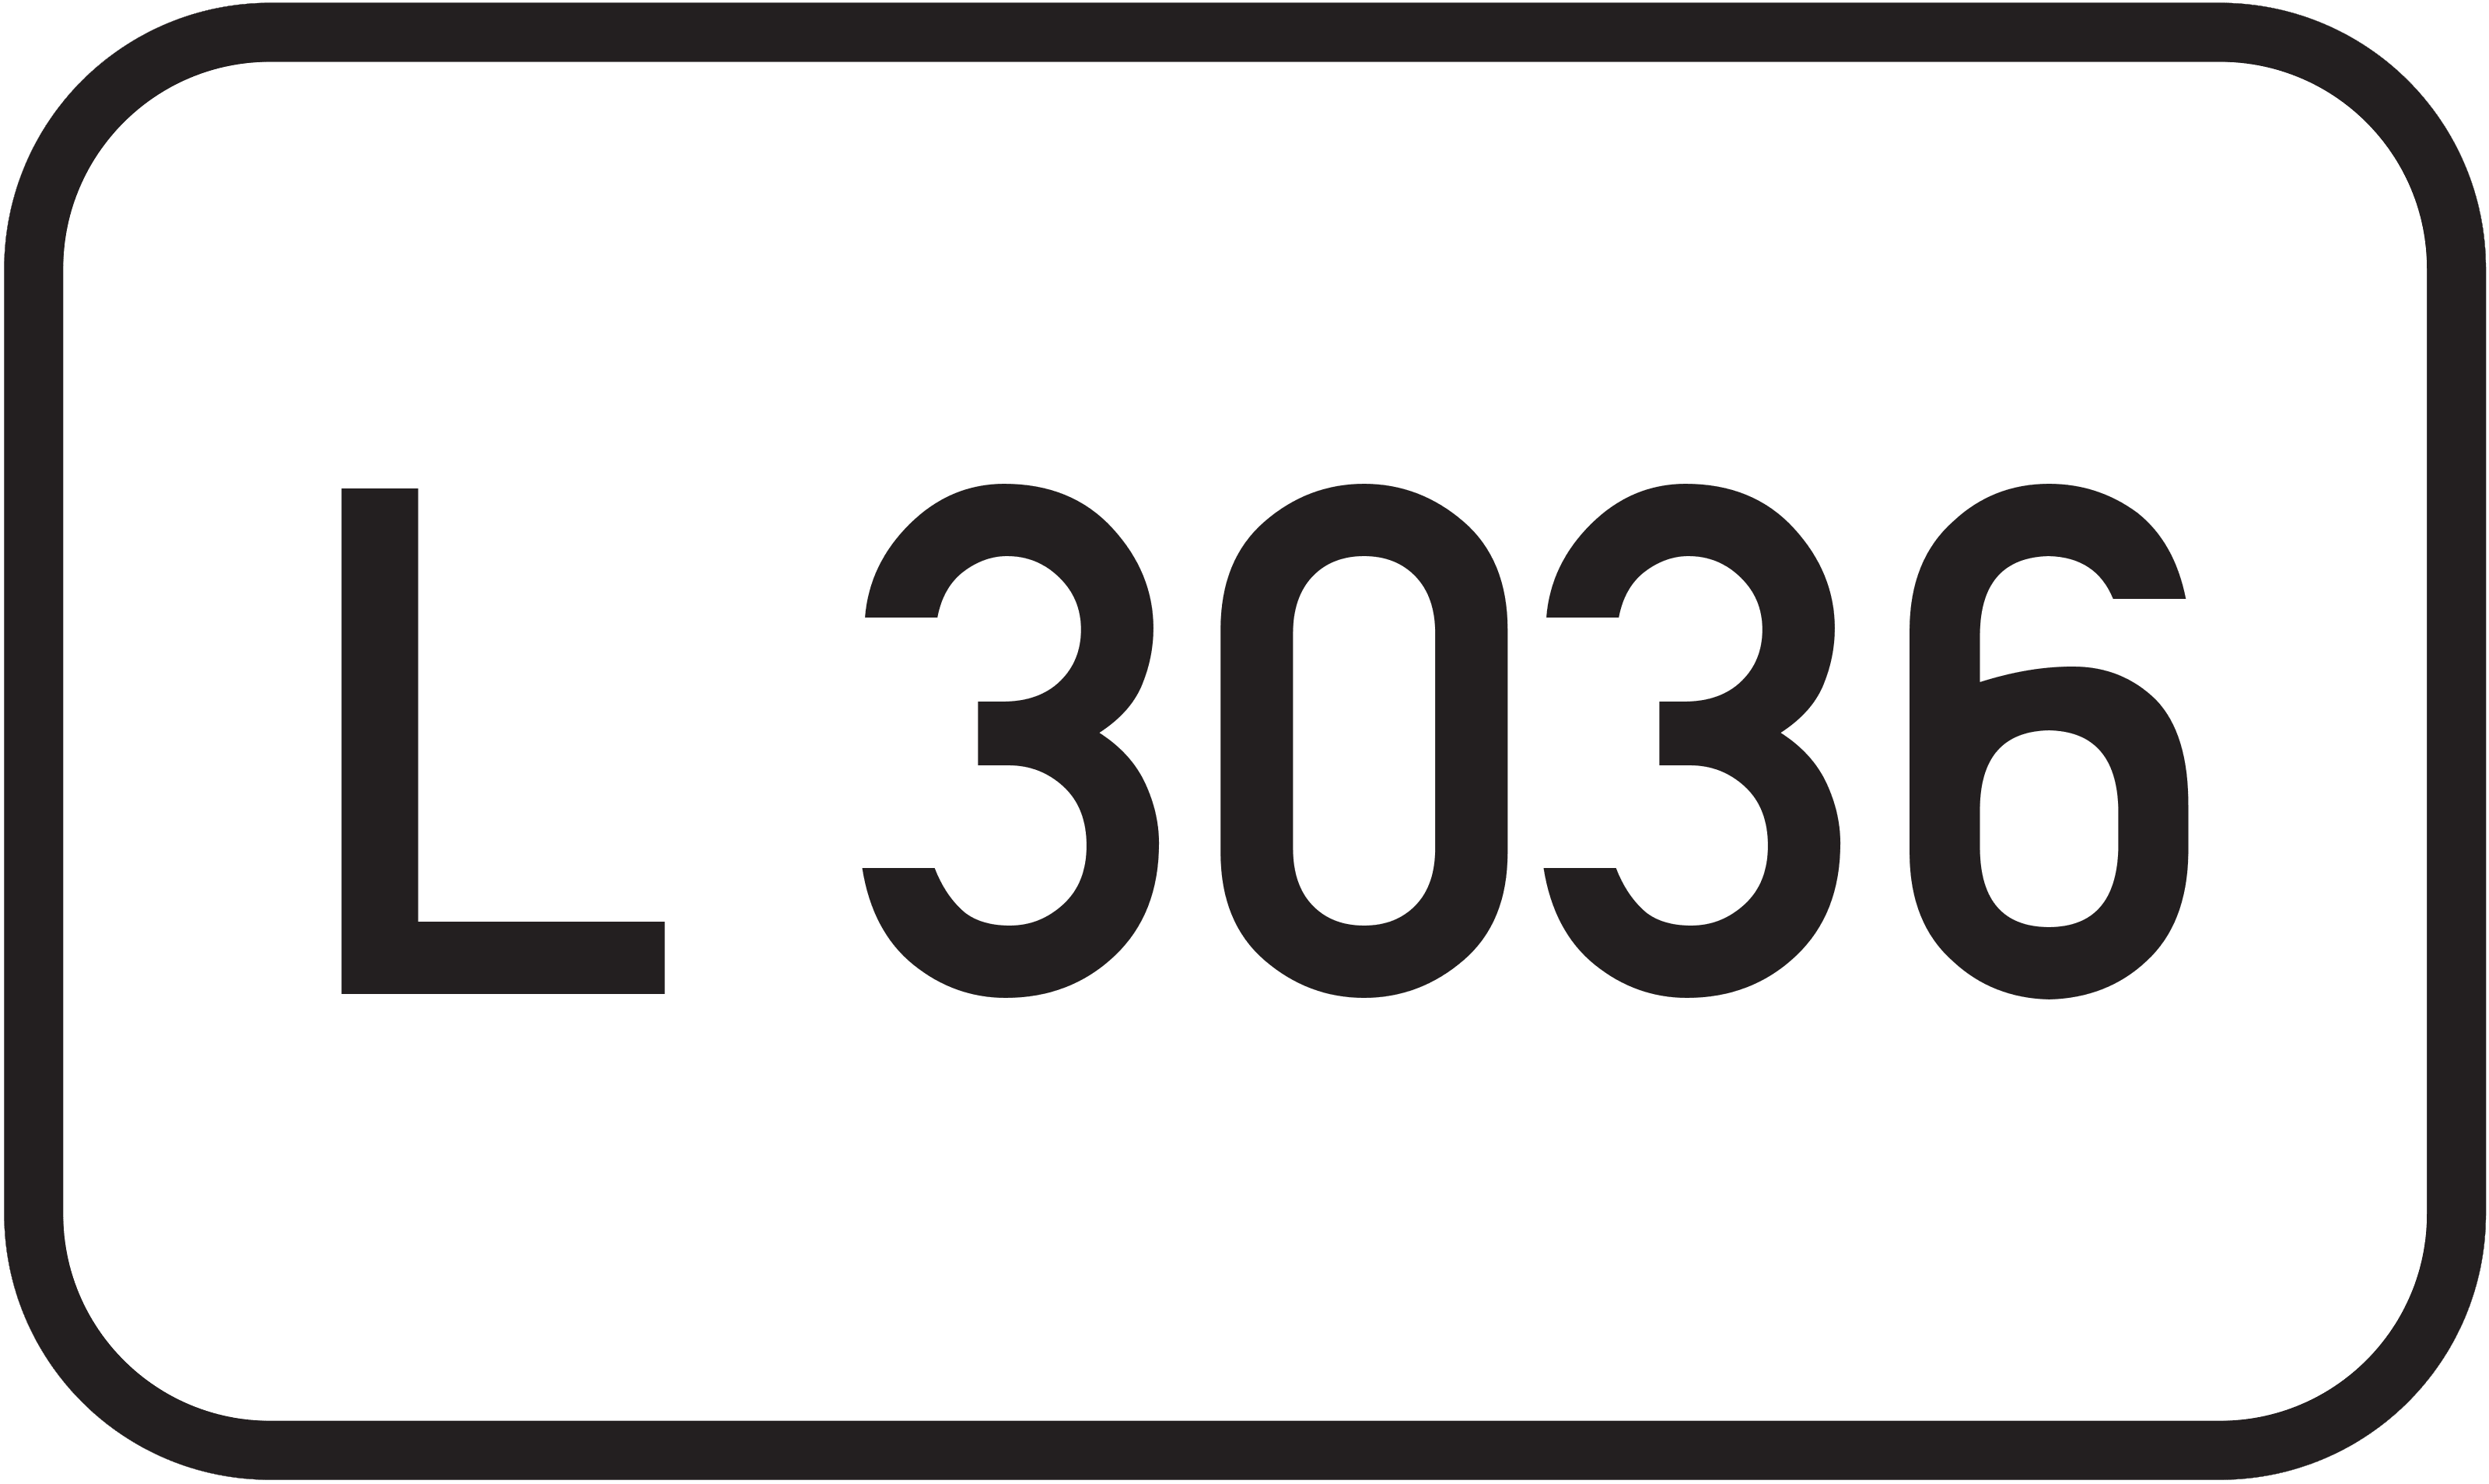 Landesstraße L 3036